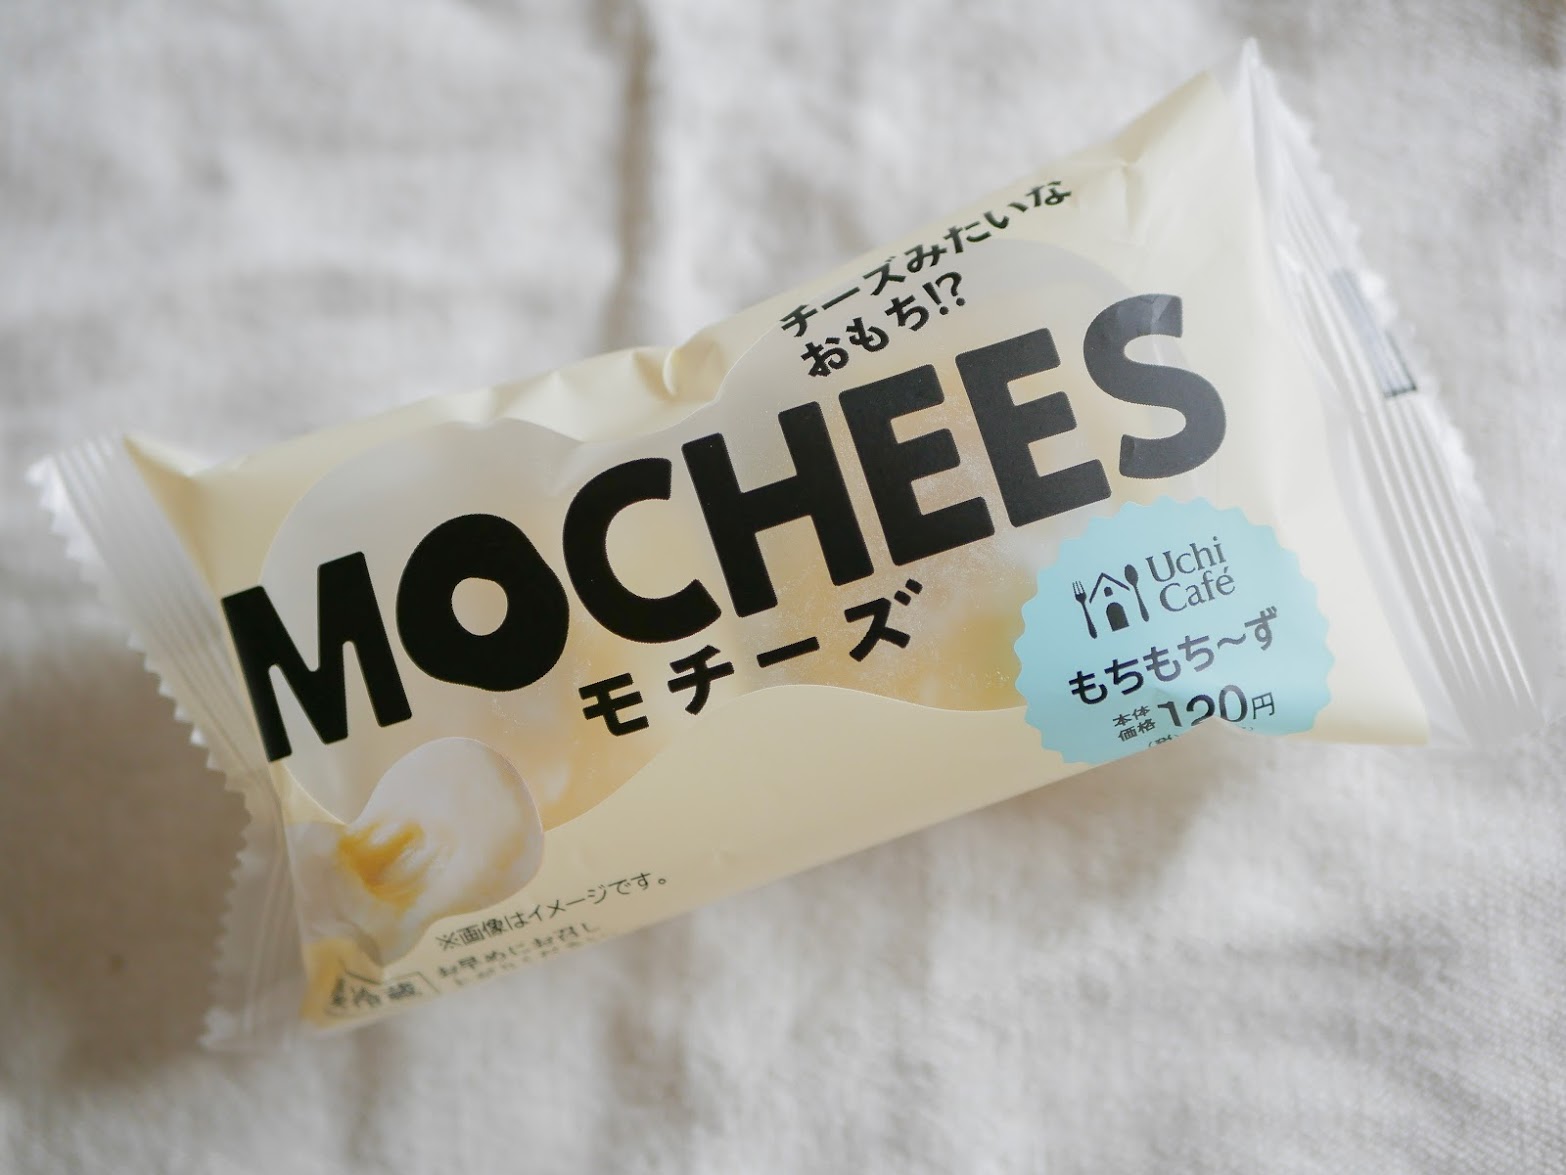 ローソン Mochees モチーズ が罪深い美味しさ とろとろチーズと柔らかいお餅の組み合わせが最高だよ Pouch ポーチ